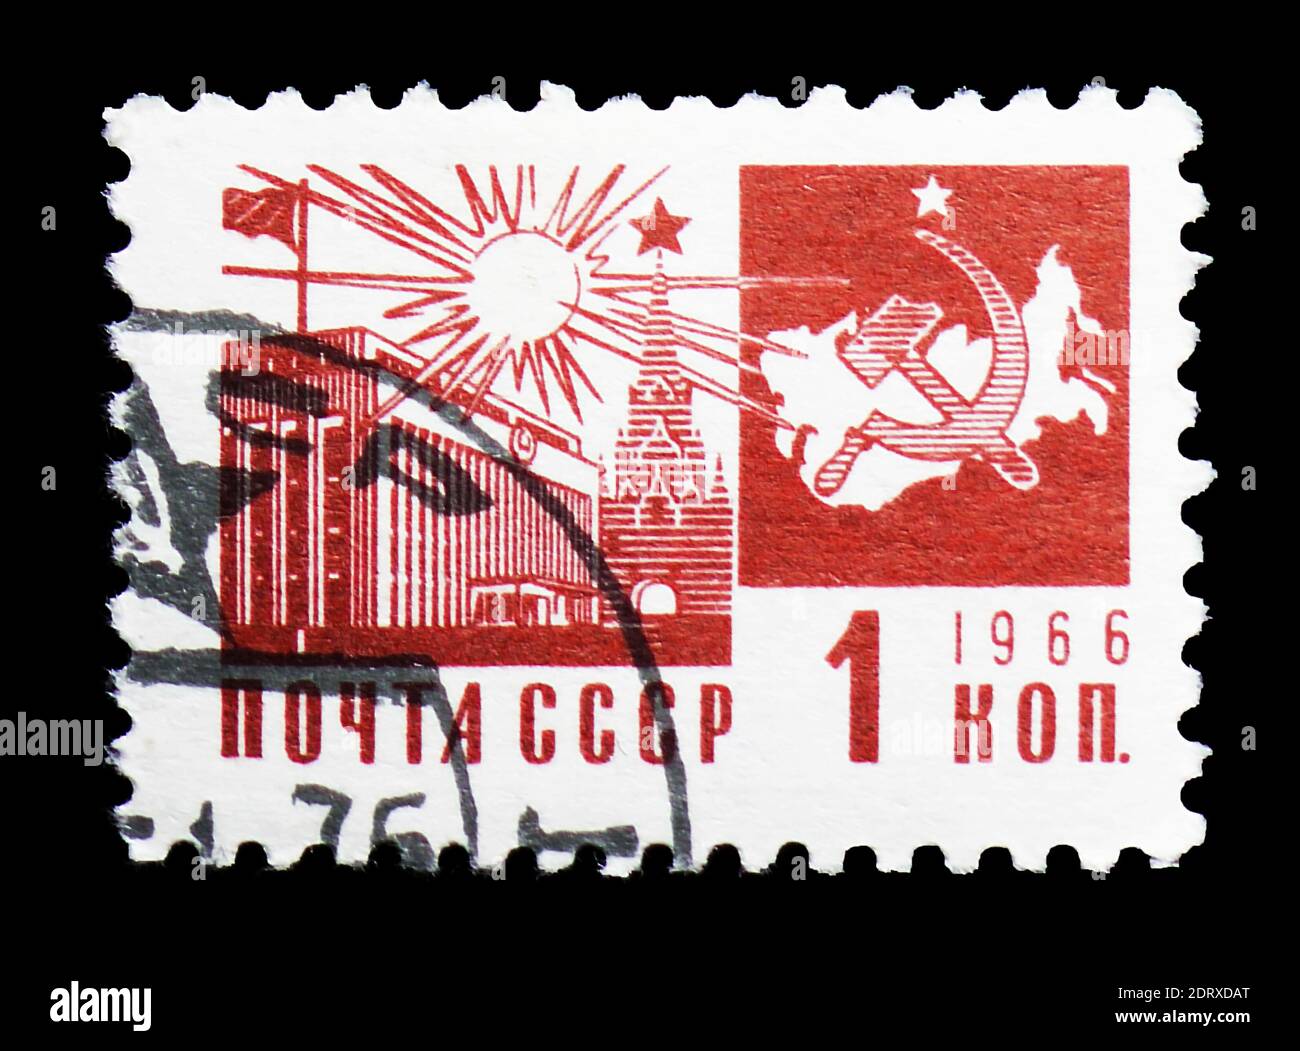 MOSCA, RUSSIA - 14 FEBBRAIO 2019: Un francobollo stampato in URSS (Russia) mostra il Palazzo dei Congressi nella serie Cremlino, Società e tecnologia, intorno al 1966 Foto Stock